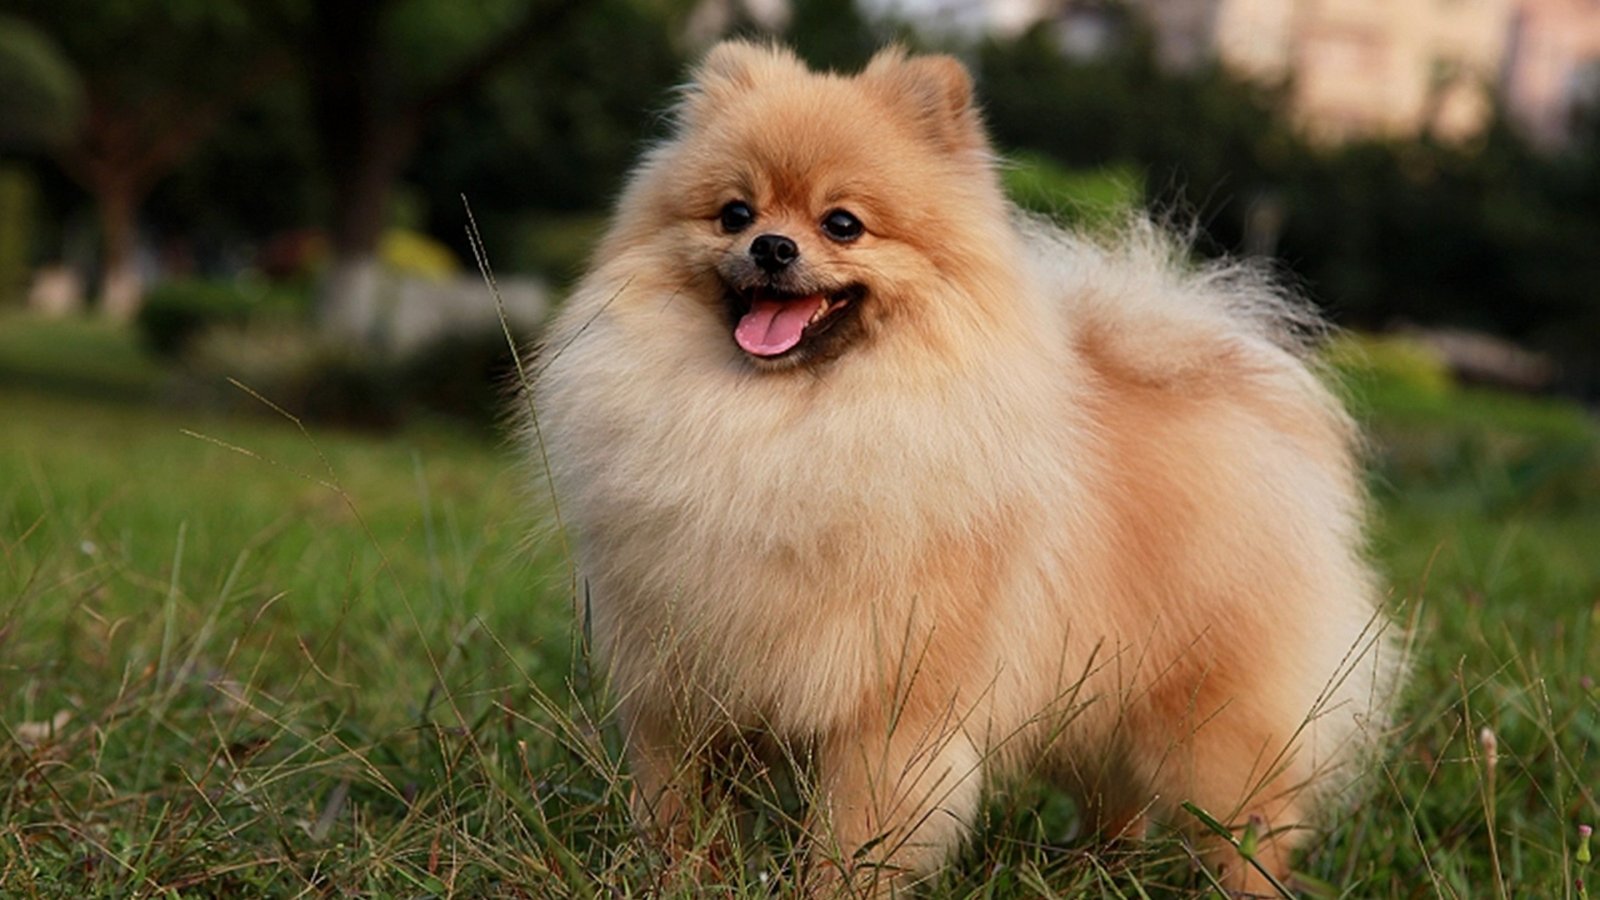 top ten cutest dog breeds